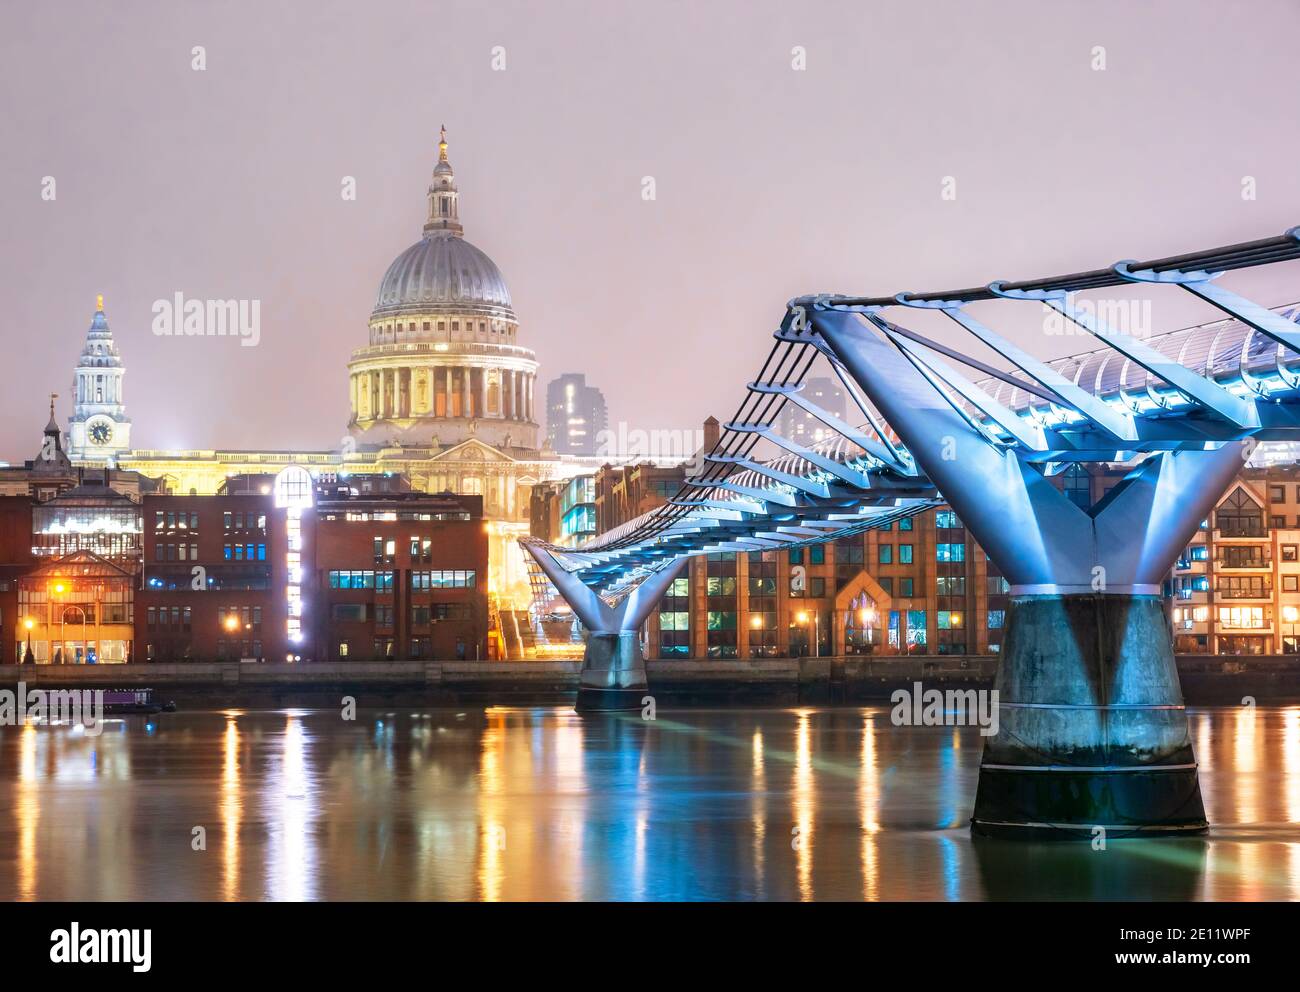 Le pont du millénaire et la célèbre cathédrale Saint-Paul de la Ville de Londres illuminée par les lumières du soir Banque D'Images